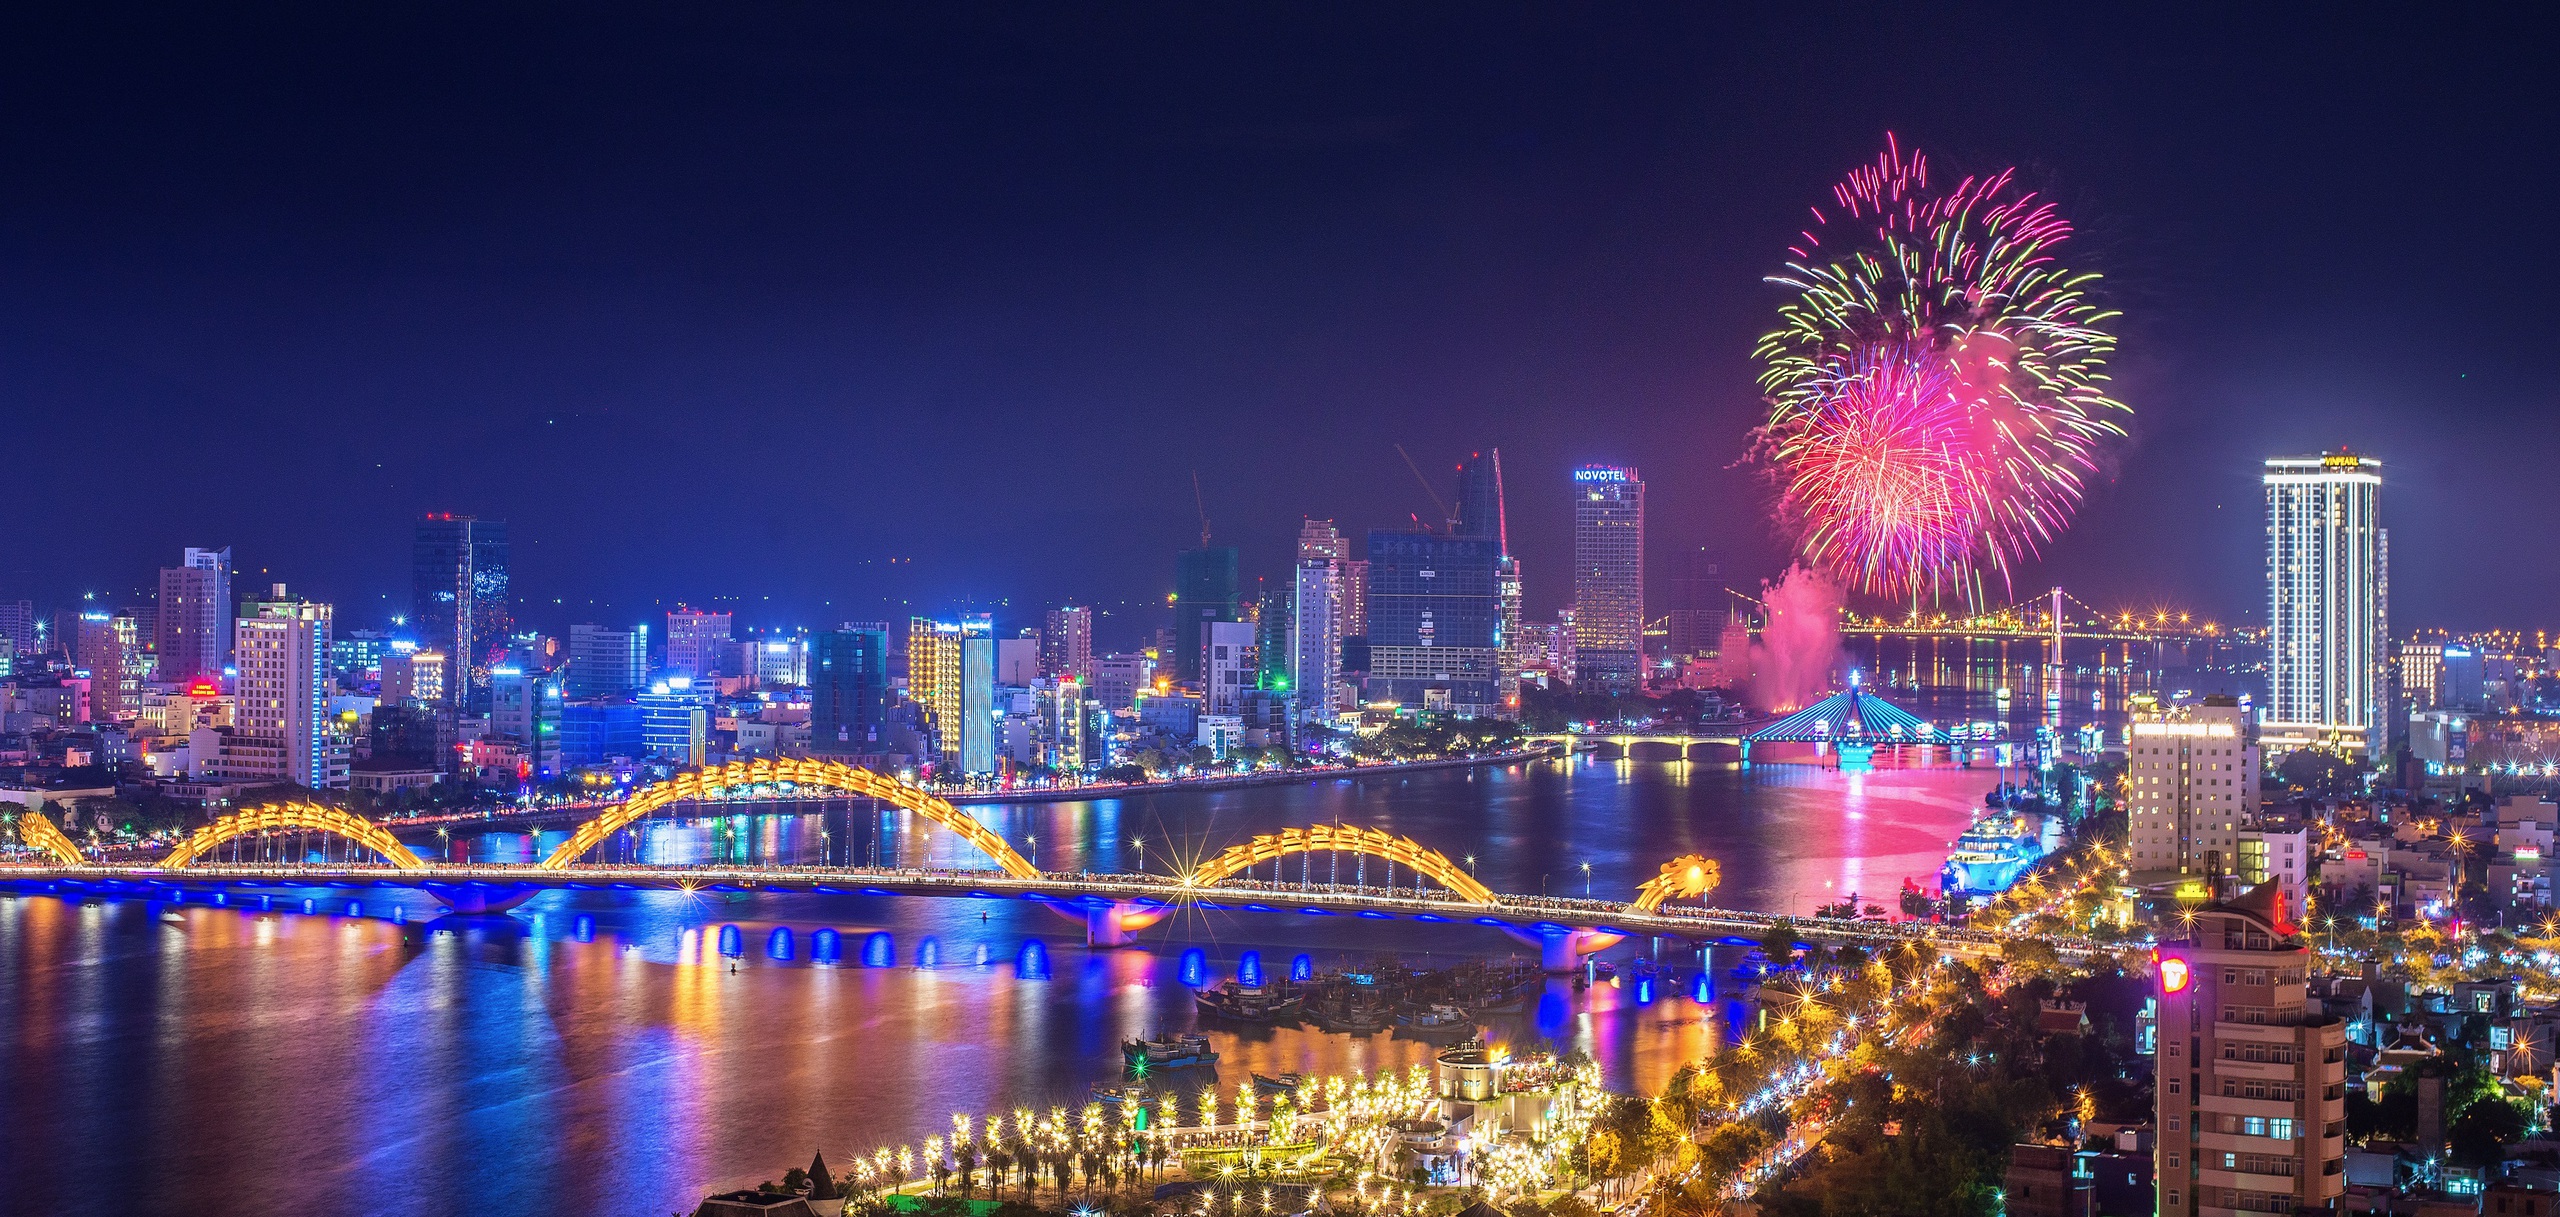 Lễ hội pháo hoa quốc tế Đà Nẵng tạo sức hút và thương hiệu cho thành phố Đà Nẵng đáng đến